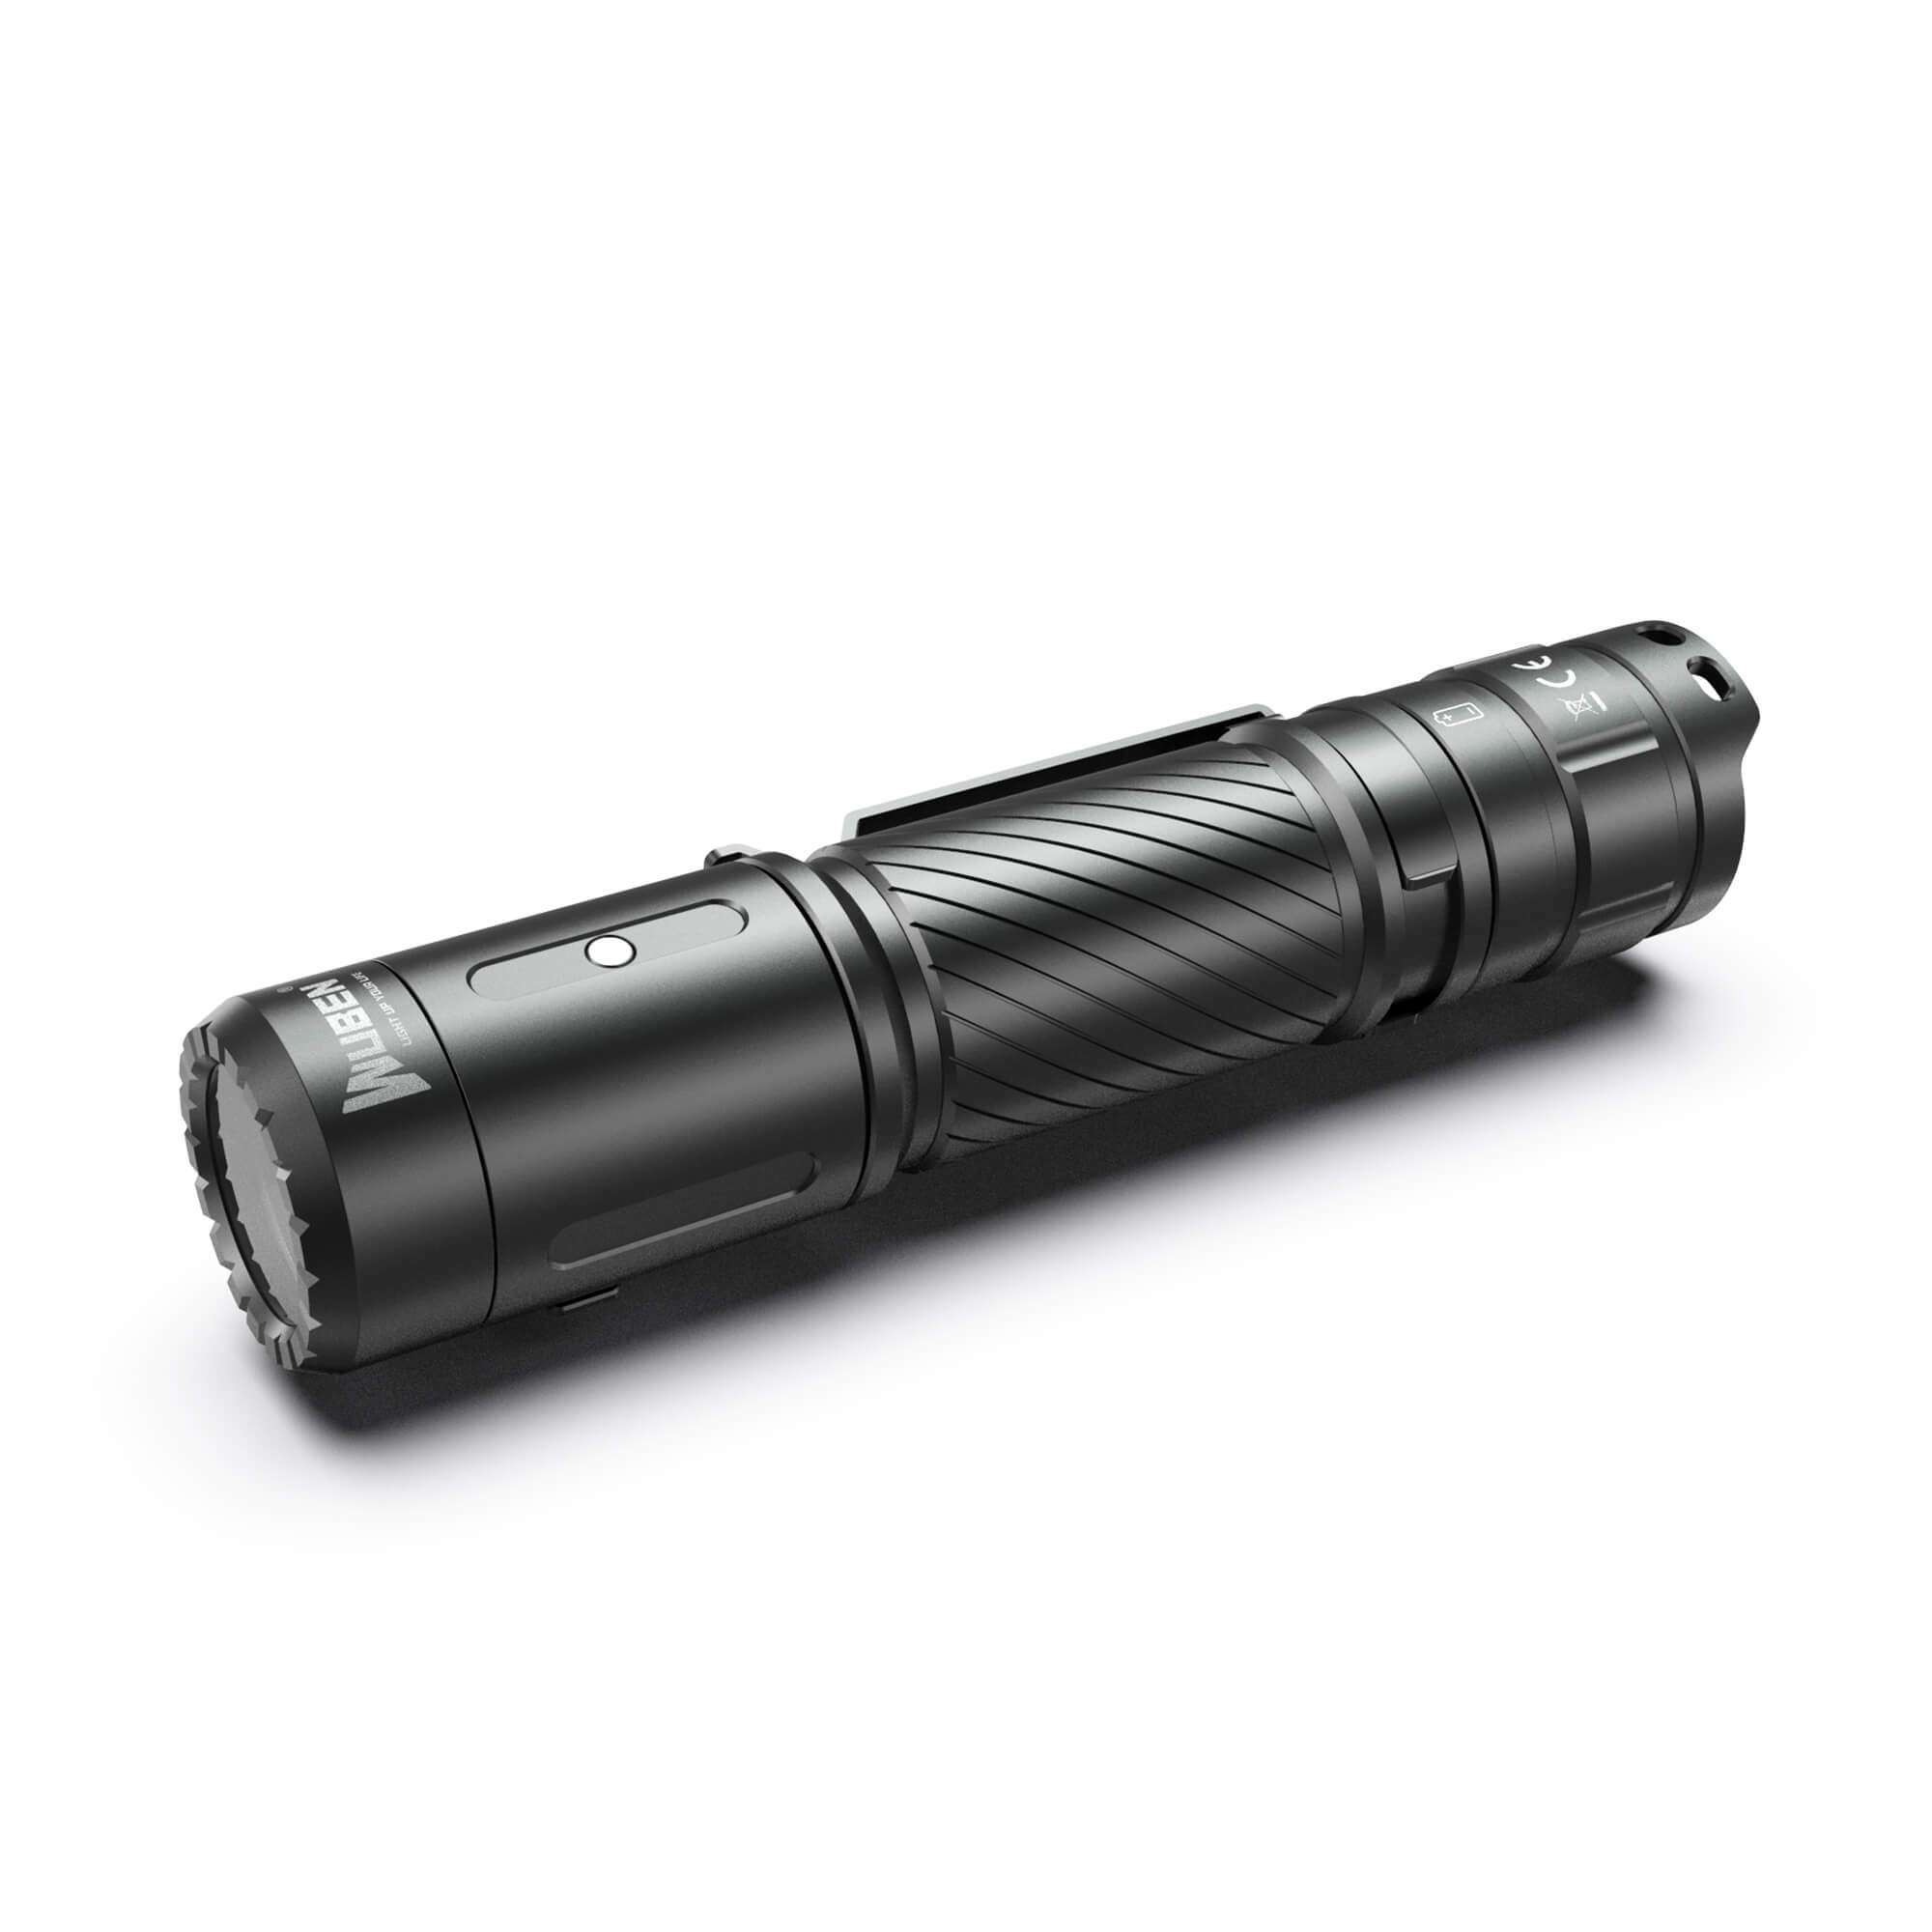 Wuben C3 Rechargeable Compact 1200 Lumen Flashlight - 179 Metres